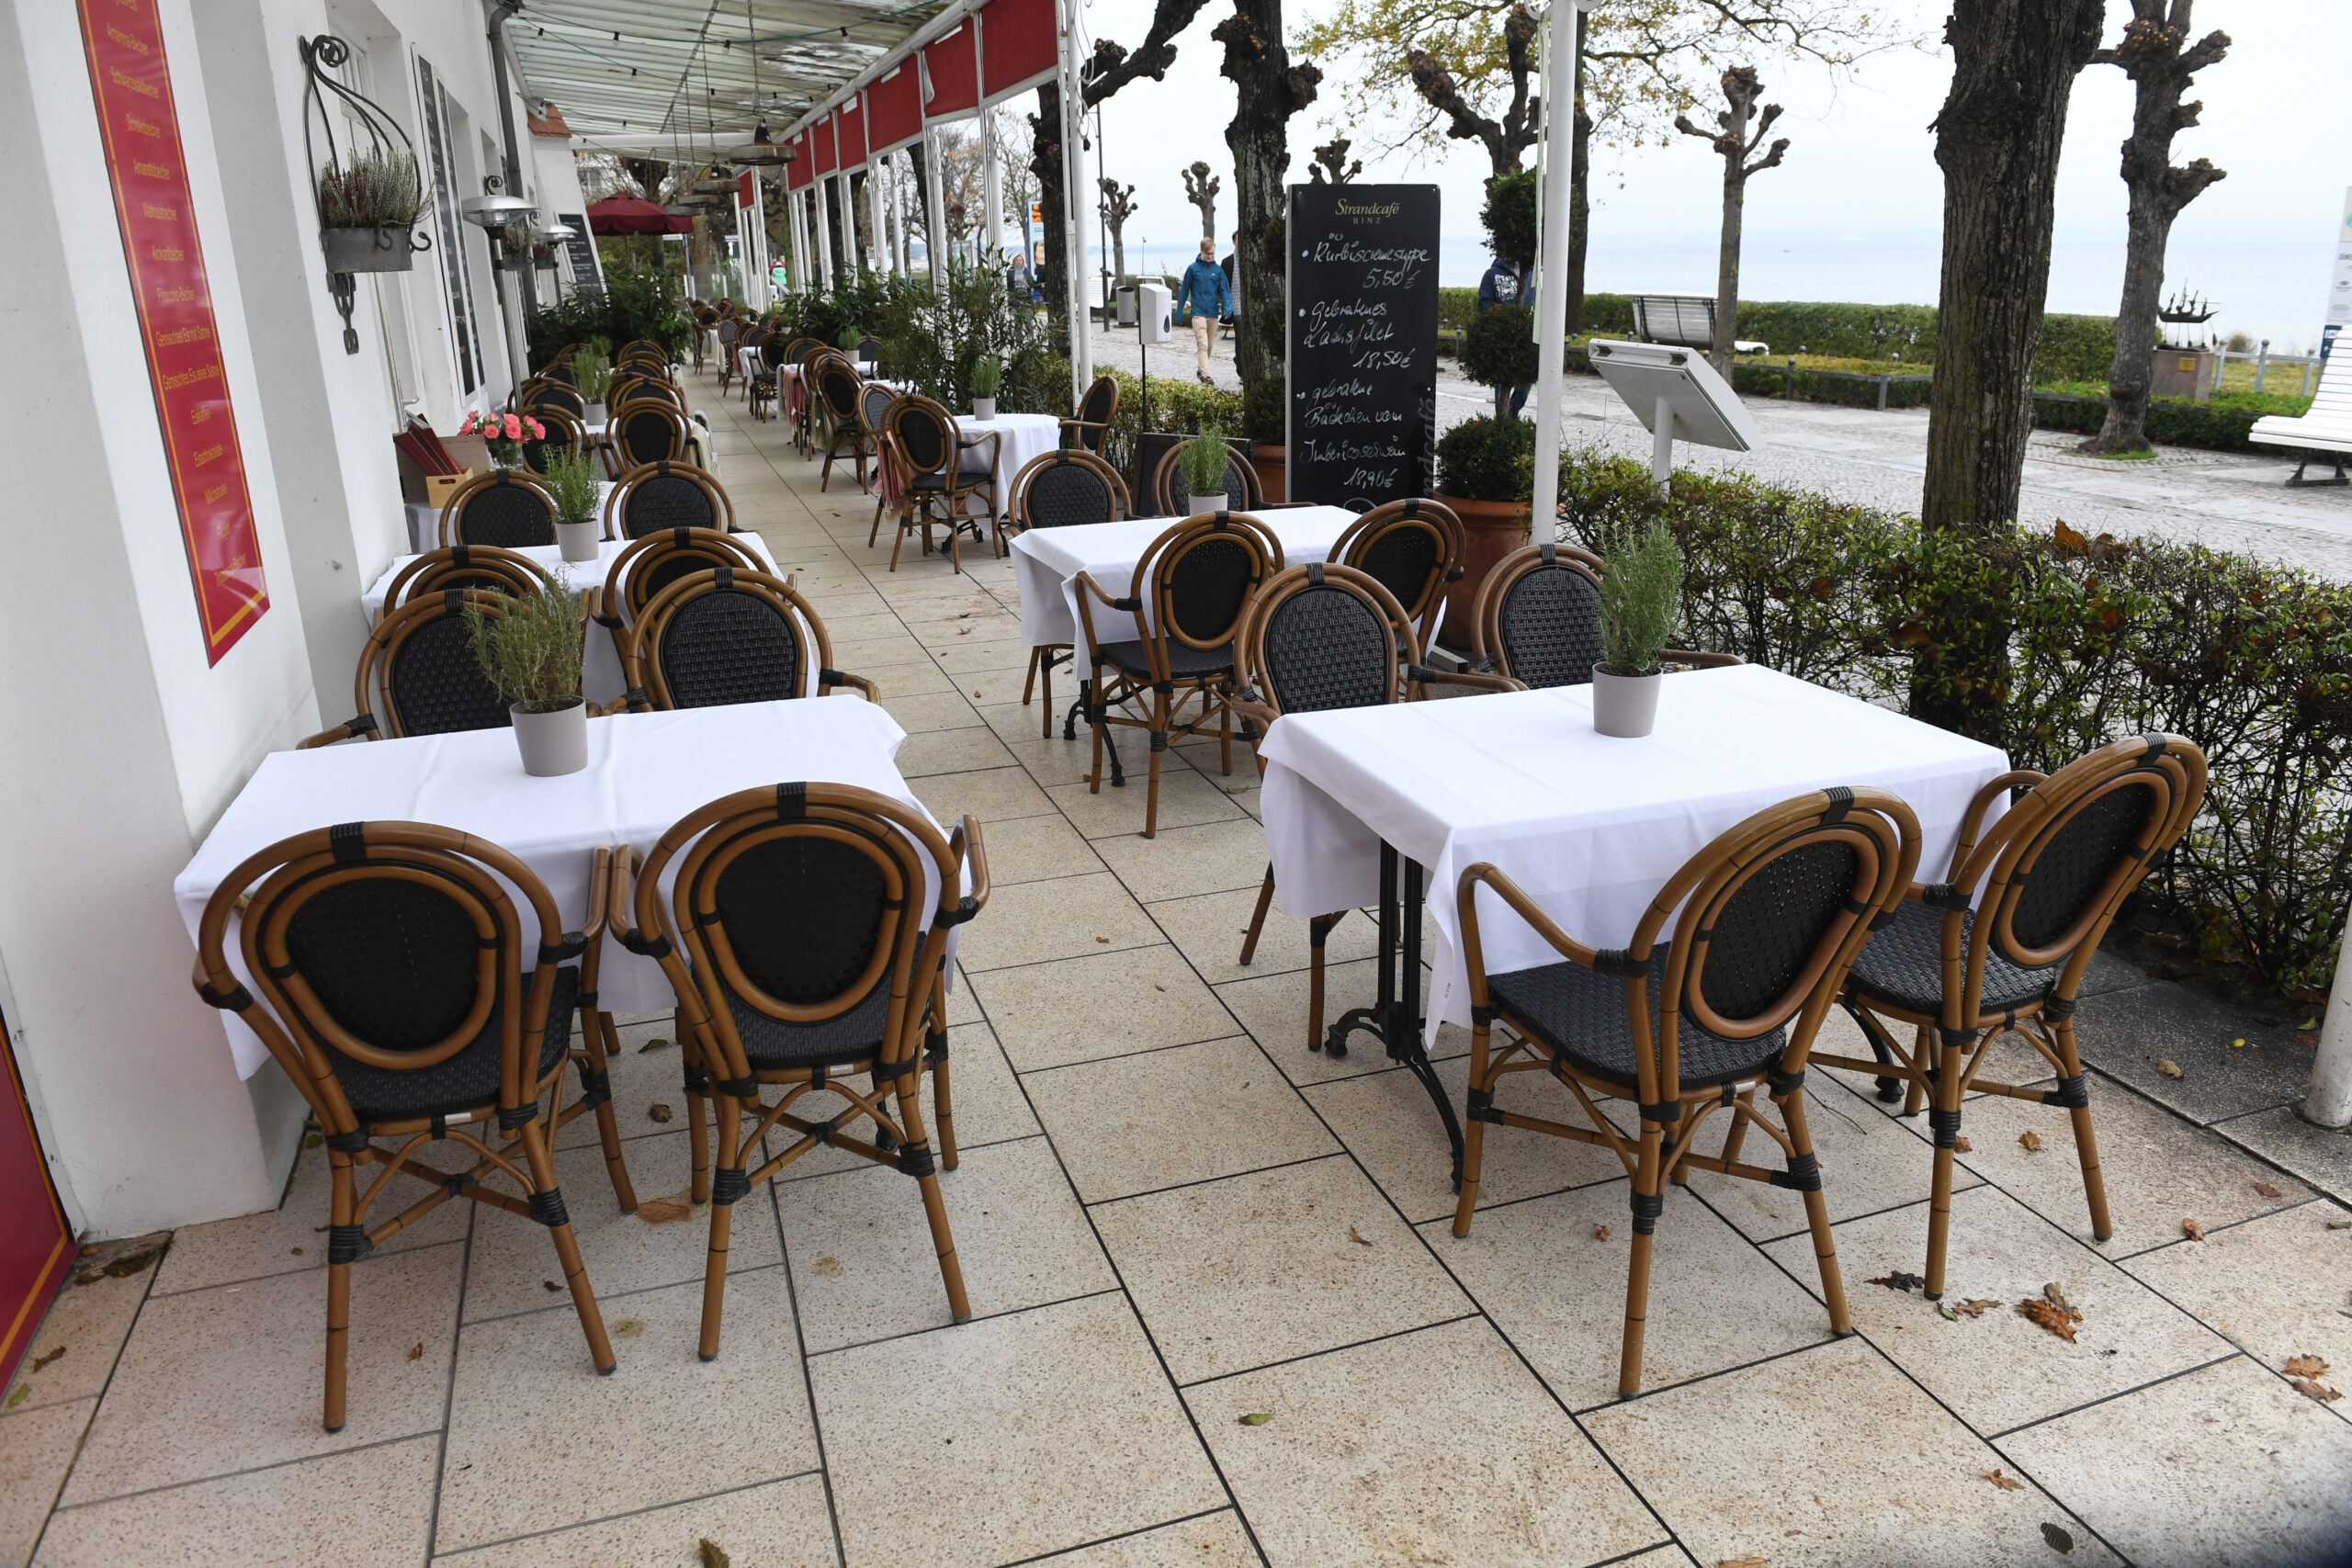 Leere Tische und Stühle stehen im Außenbereich einer Gaststätte (Archivbild).